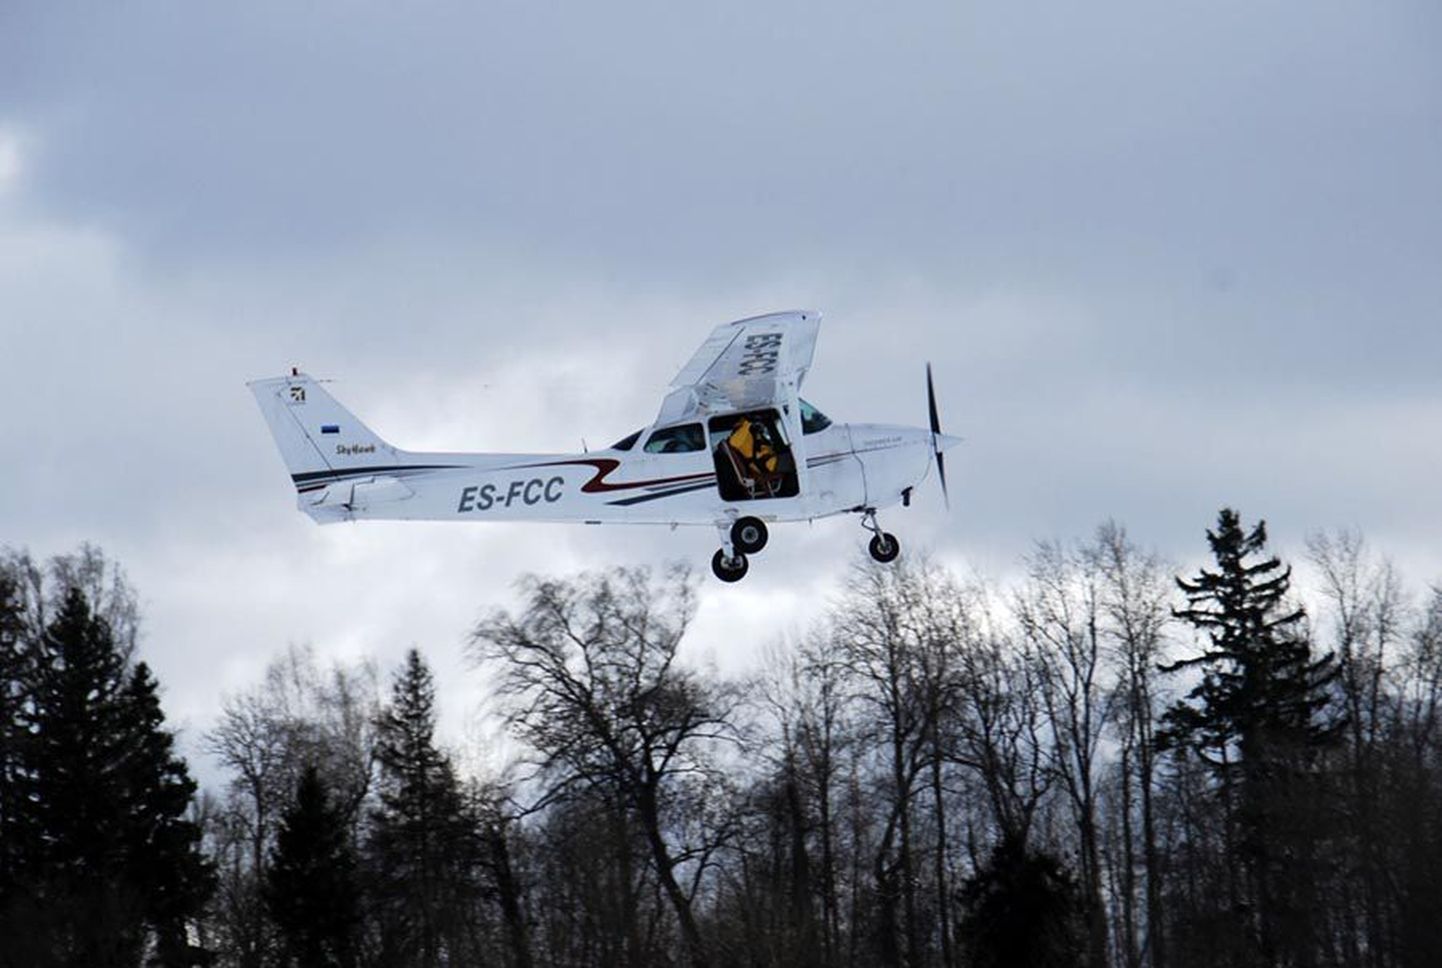 Lennupikniku avasid kolm Eesti langevarjuklubi liiget, kes hüppasid välja väikelennukist Cessna 172.